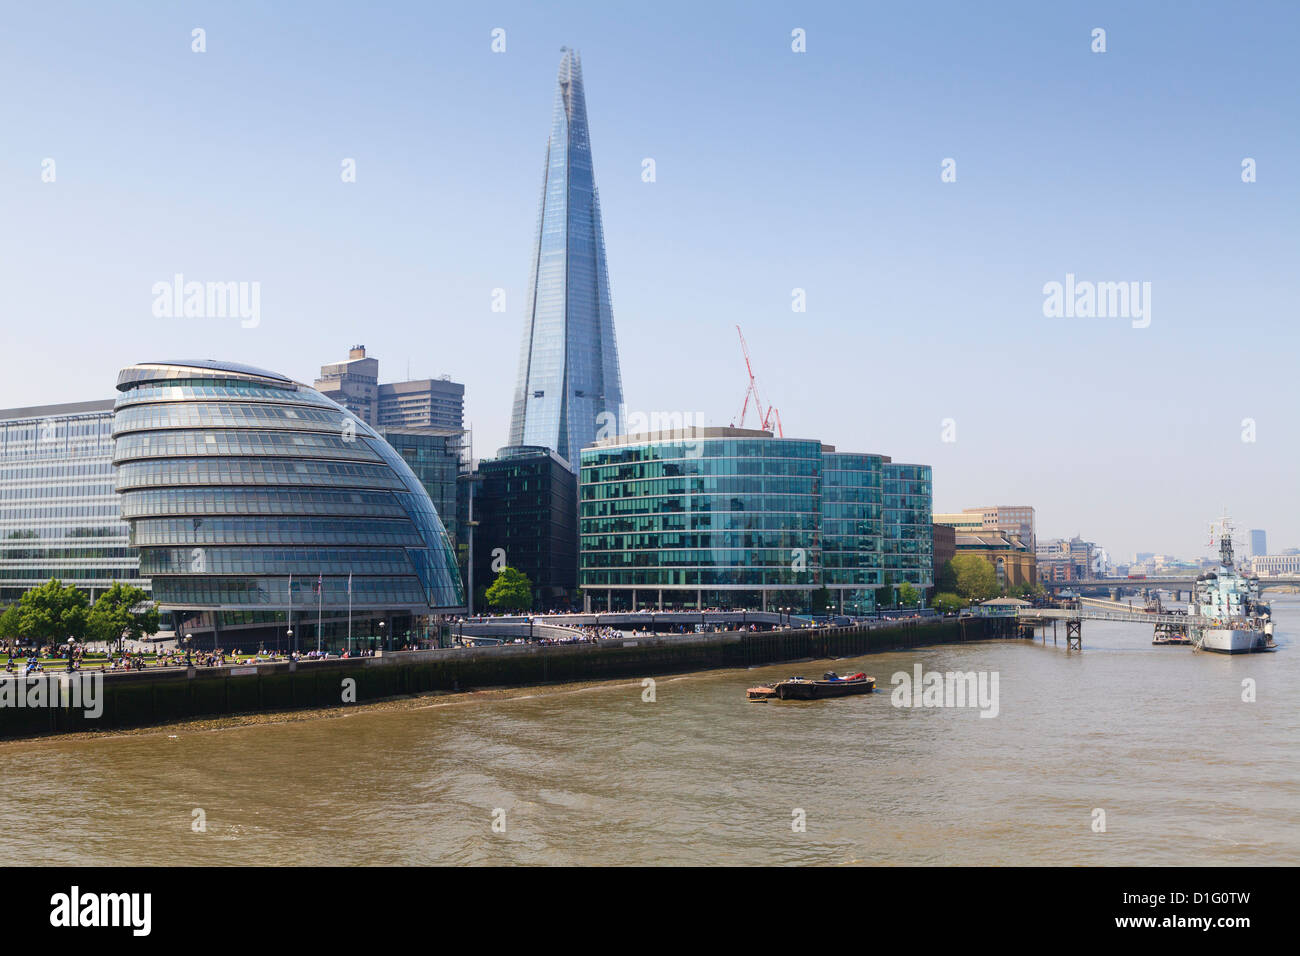 South Bank mit Rathaus, Shard London Bridge und More London Gebäude, London, England, Vereinigtes Königreich, Europa Stockfoto